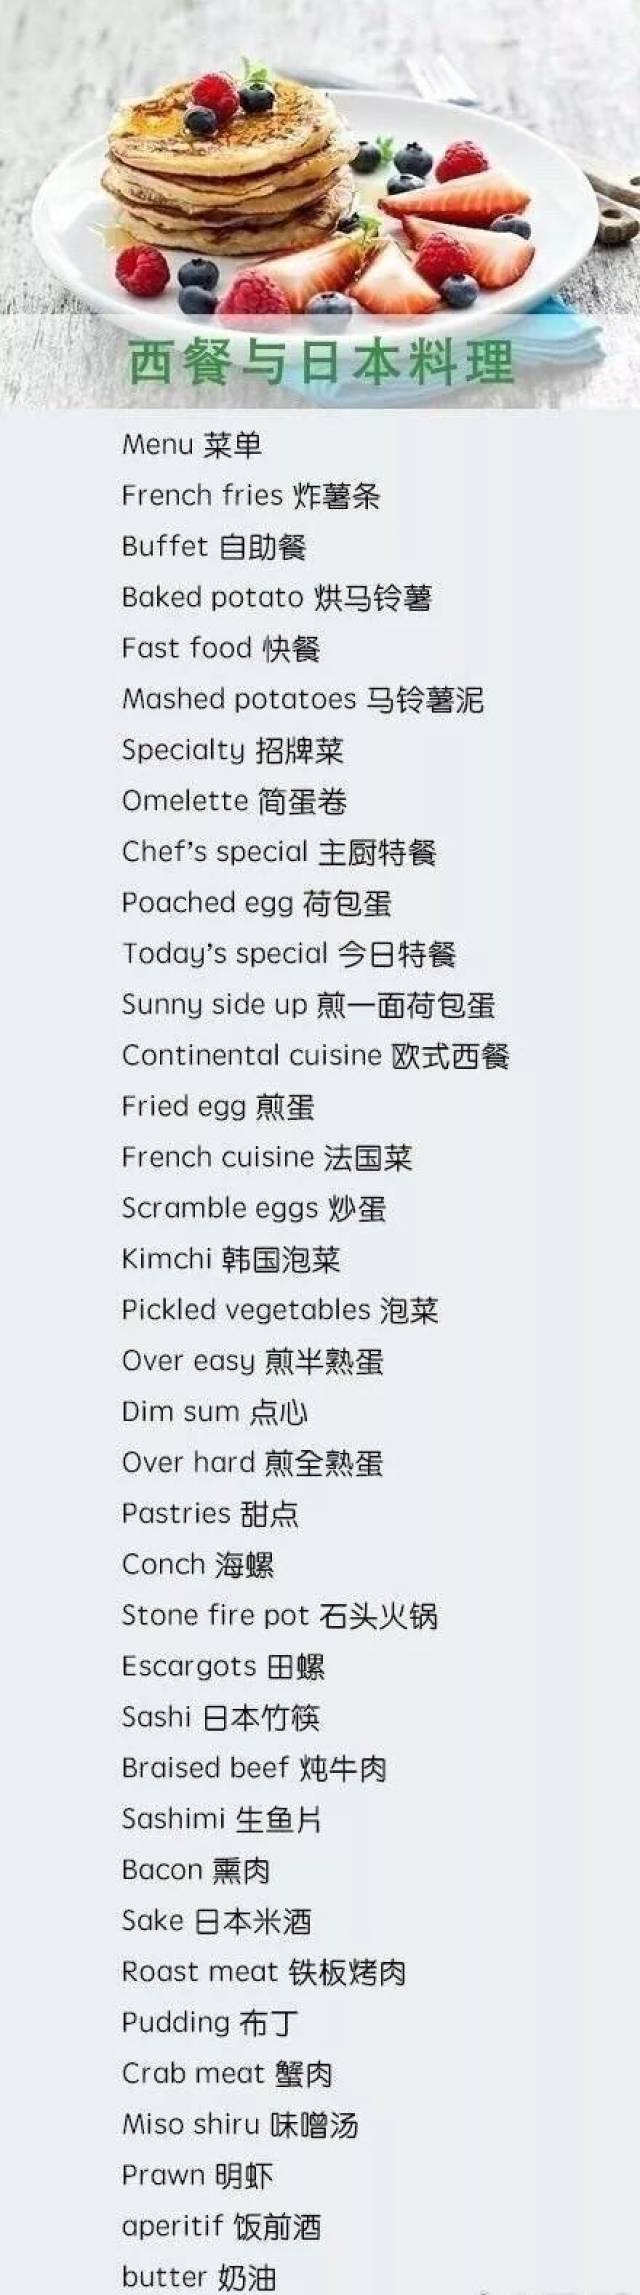 大家喜欢吃西餐吗 知道点餐菜品用英语怎么说吗?